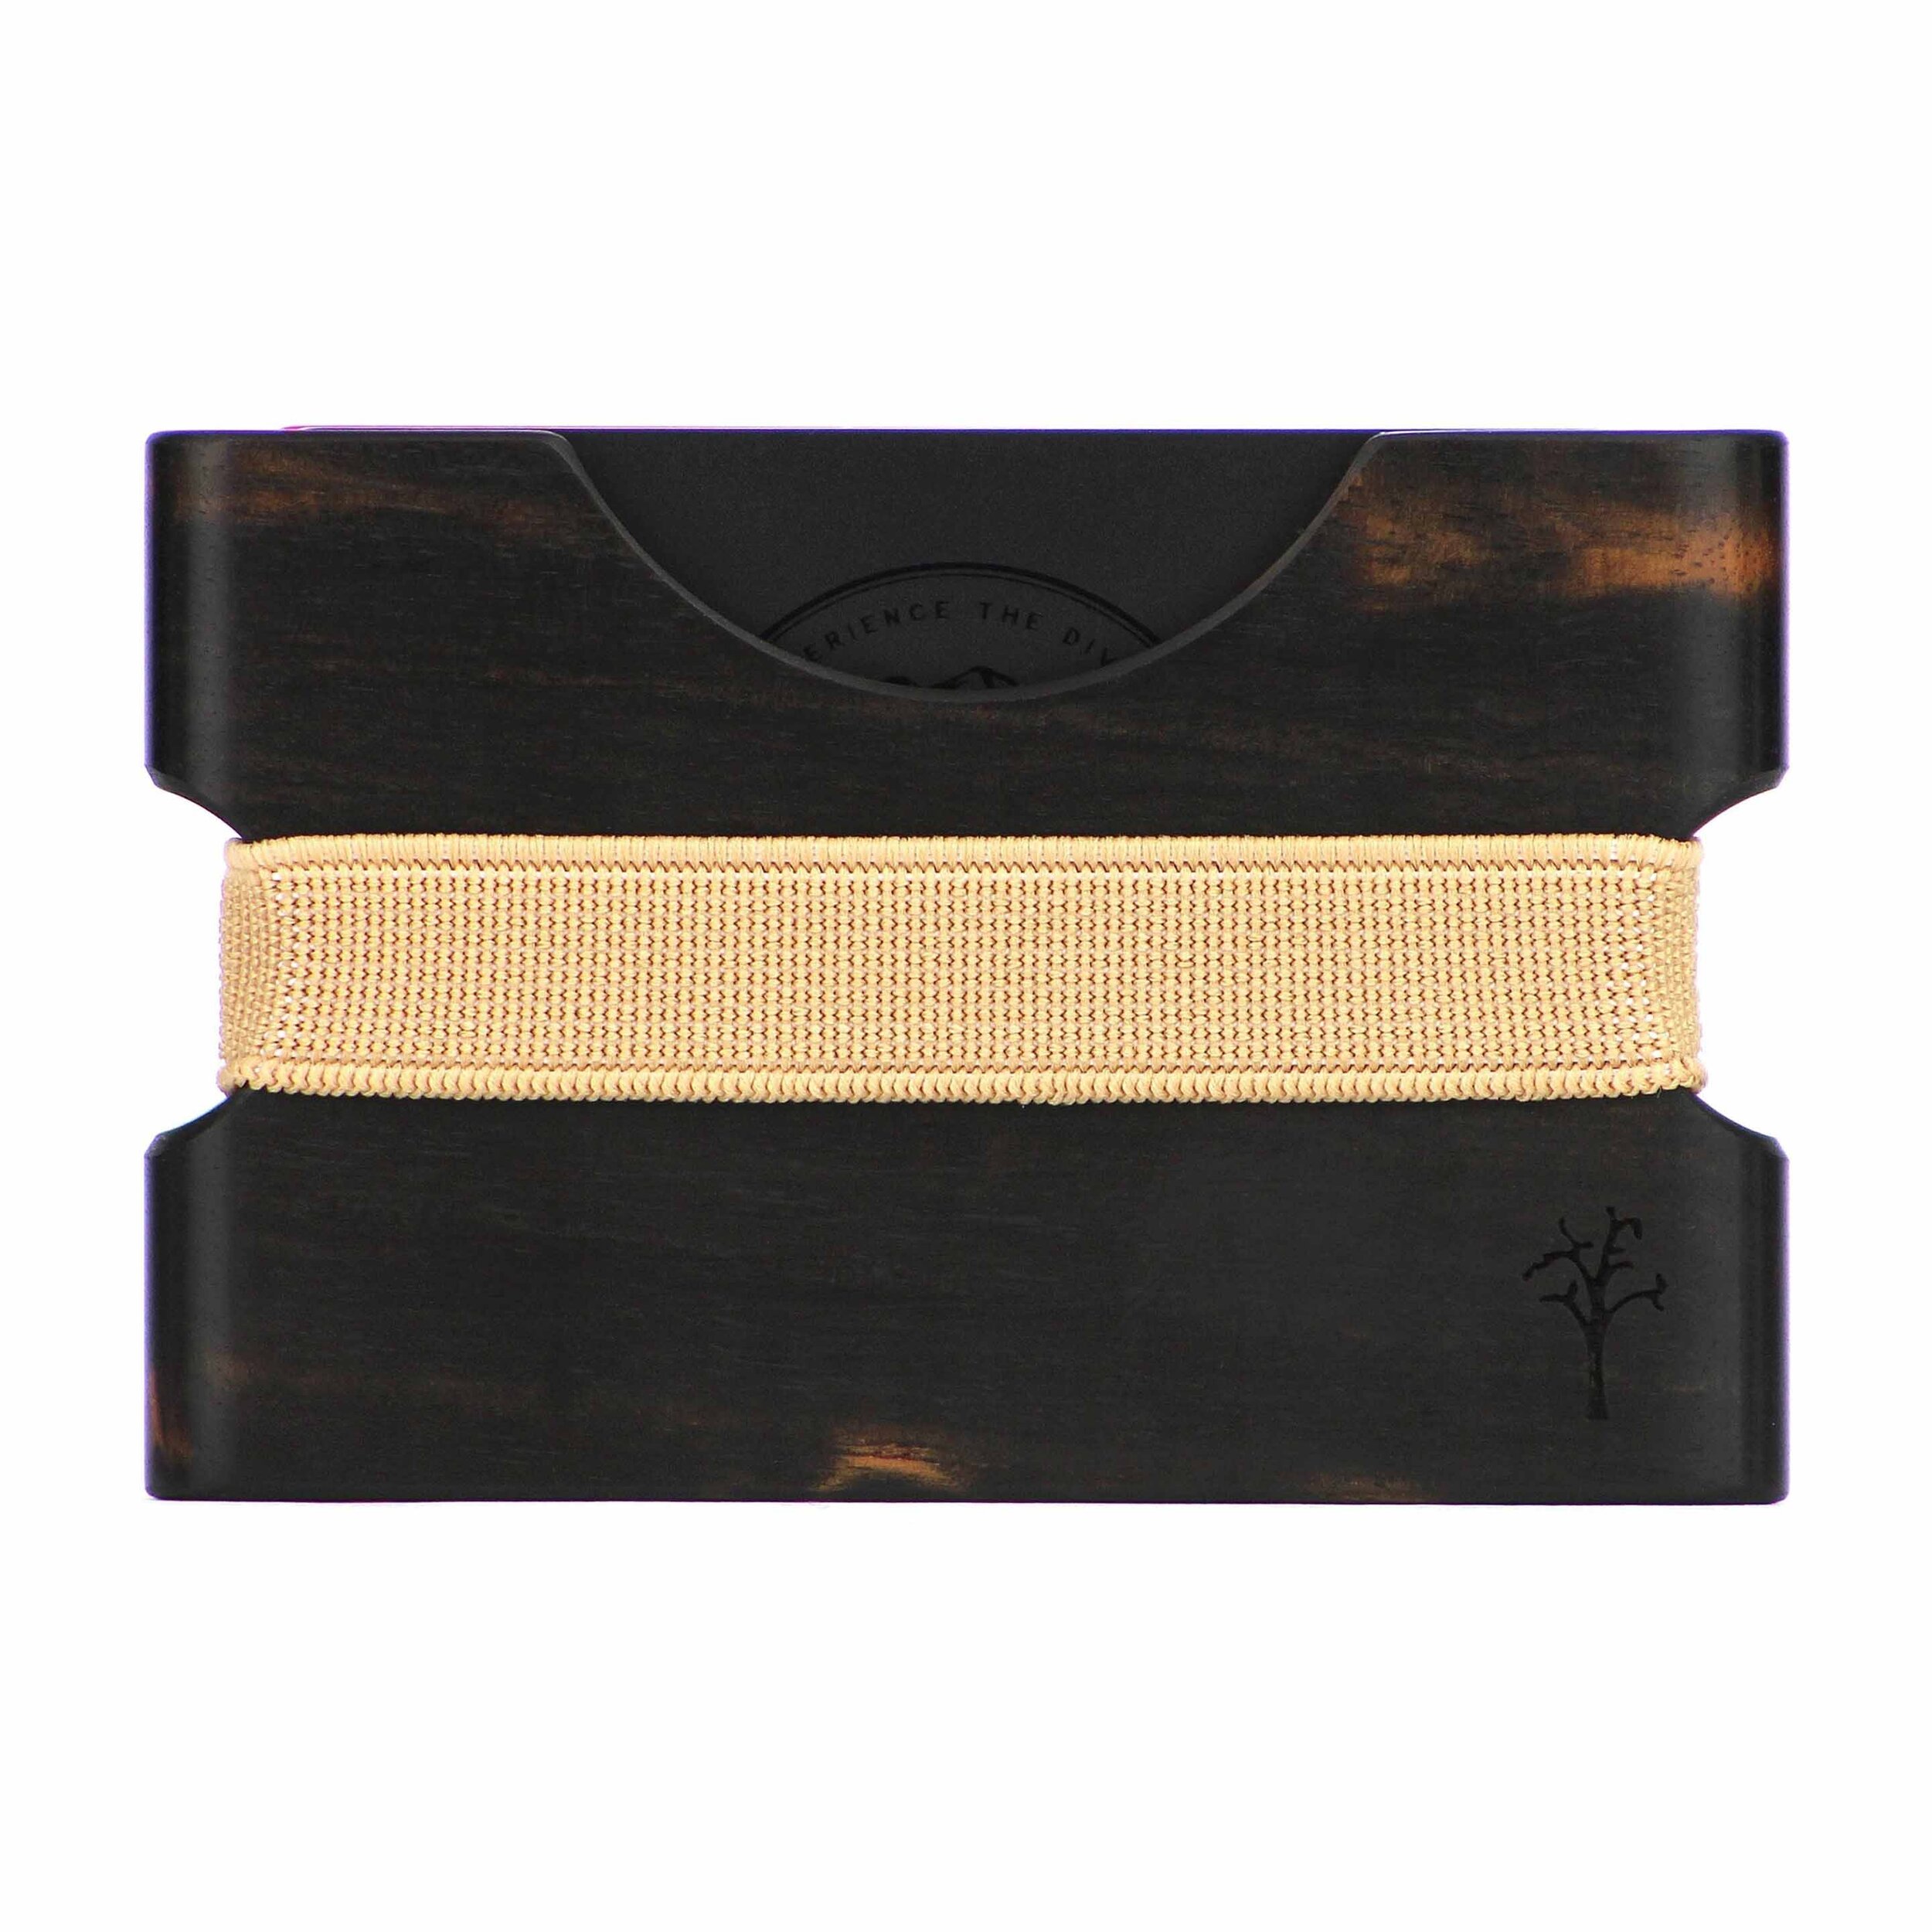 Wood Wallet by Rift Wood Company - Gaboon Ebony.jpg